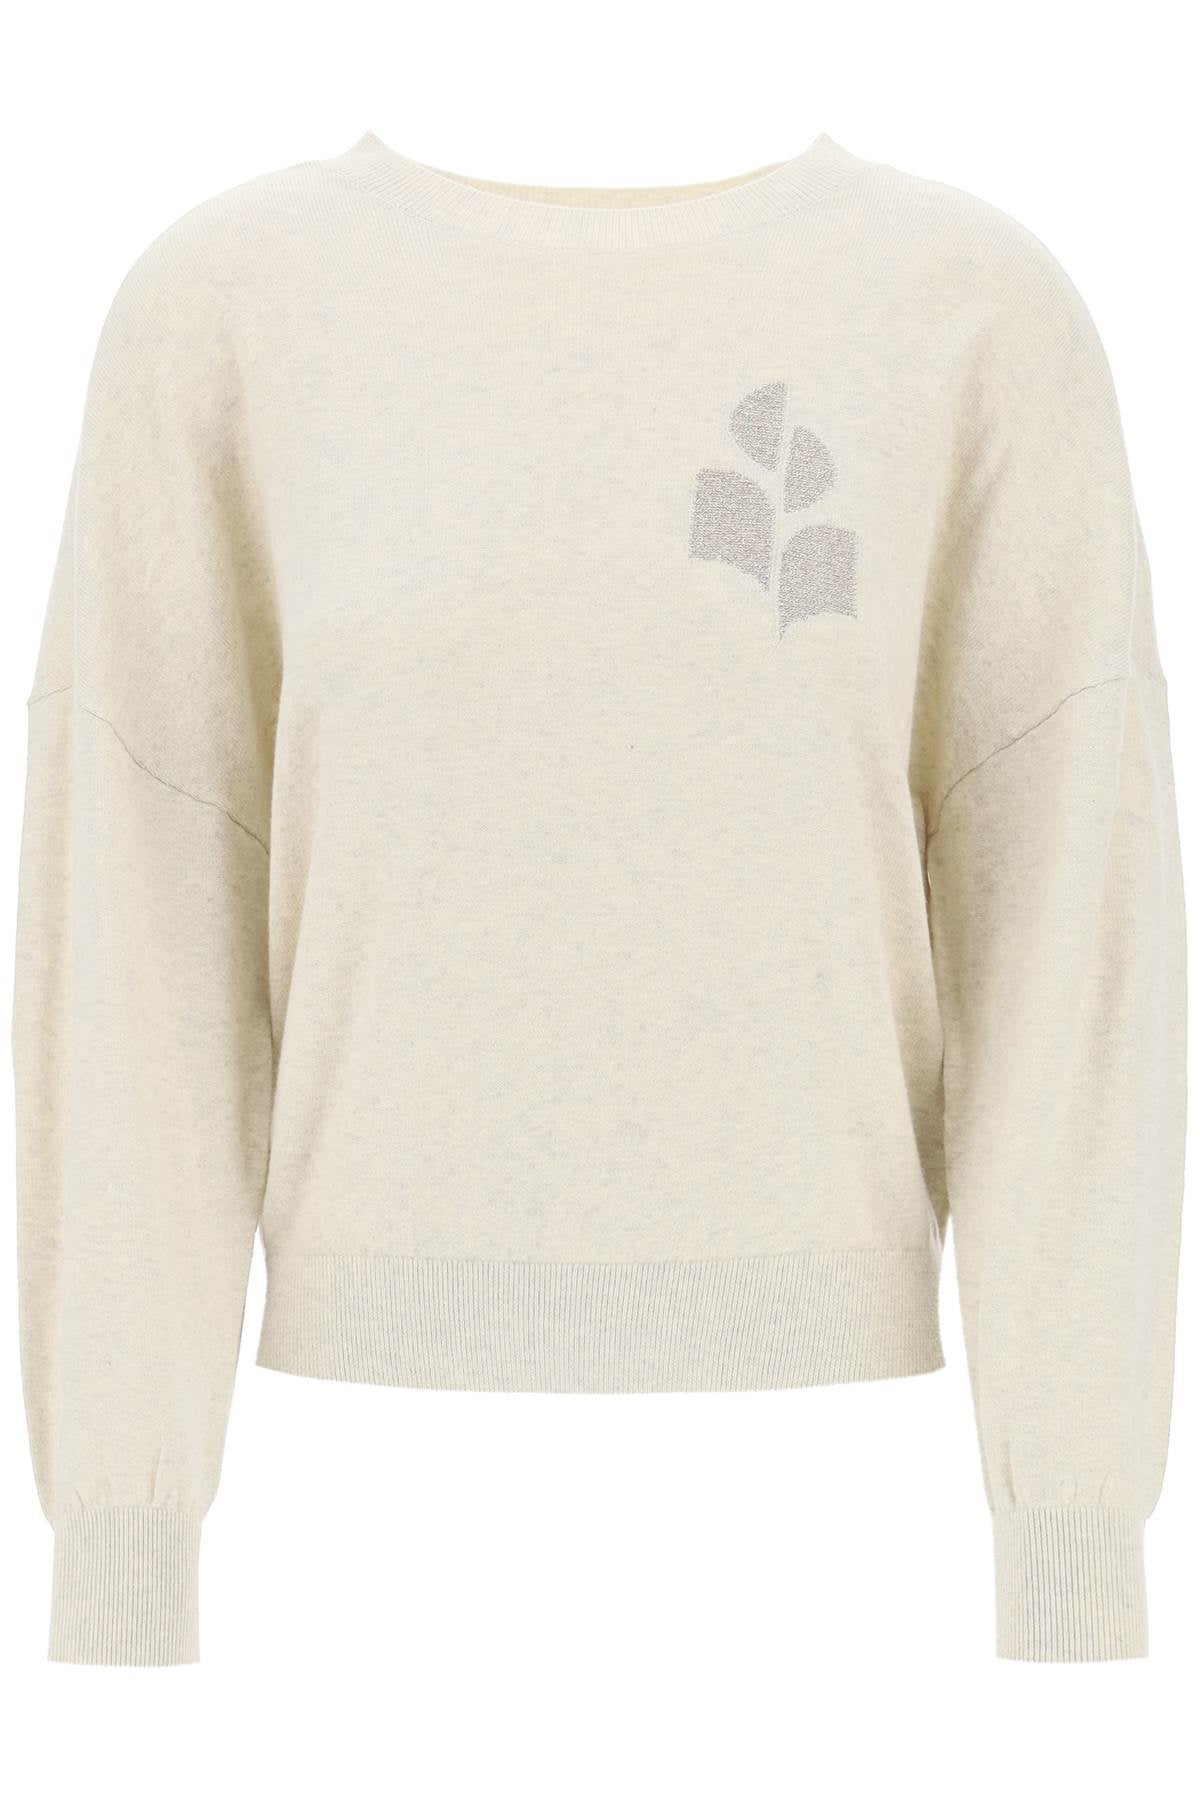 Isabel marant etoile marisans sweater with lurex logo intarsia-0